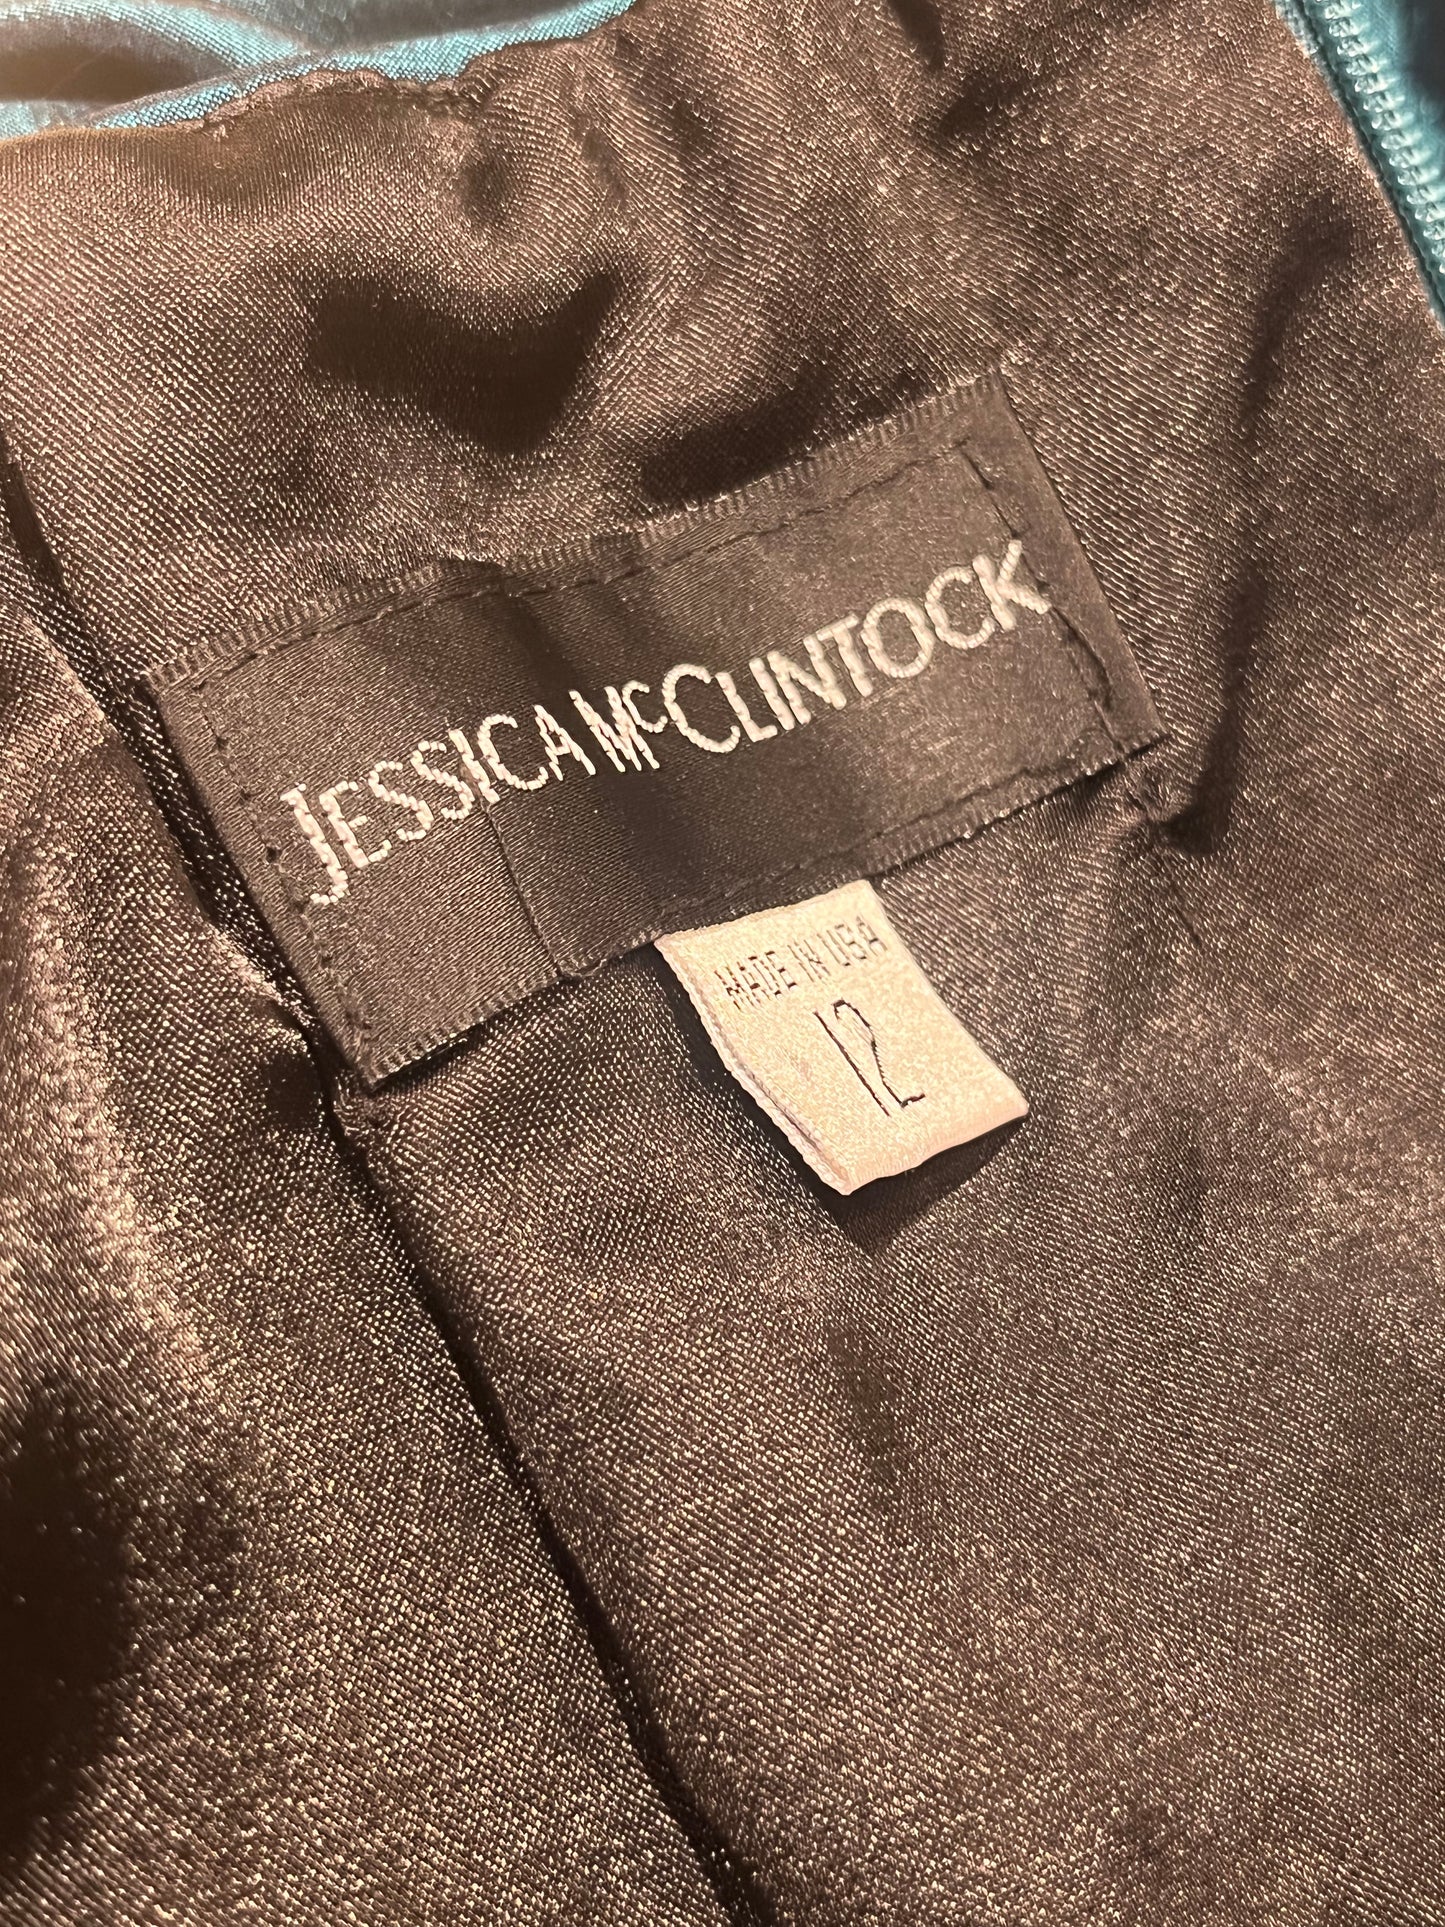 90s 'Jessica McClintock' Green Ruched Formal Mini Dress / Small